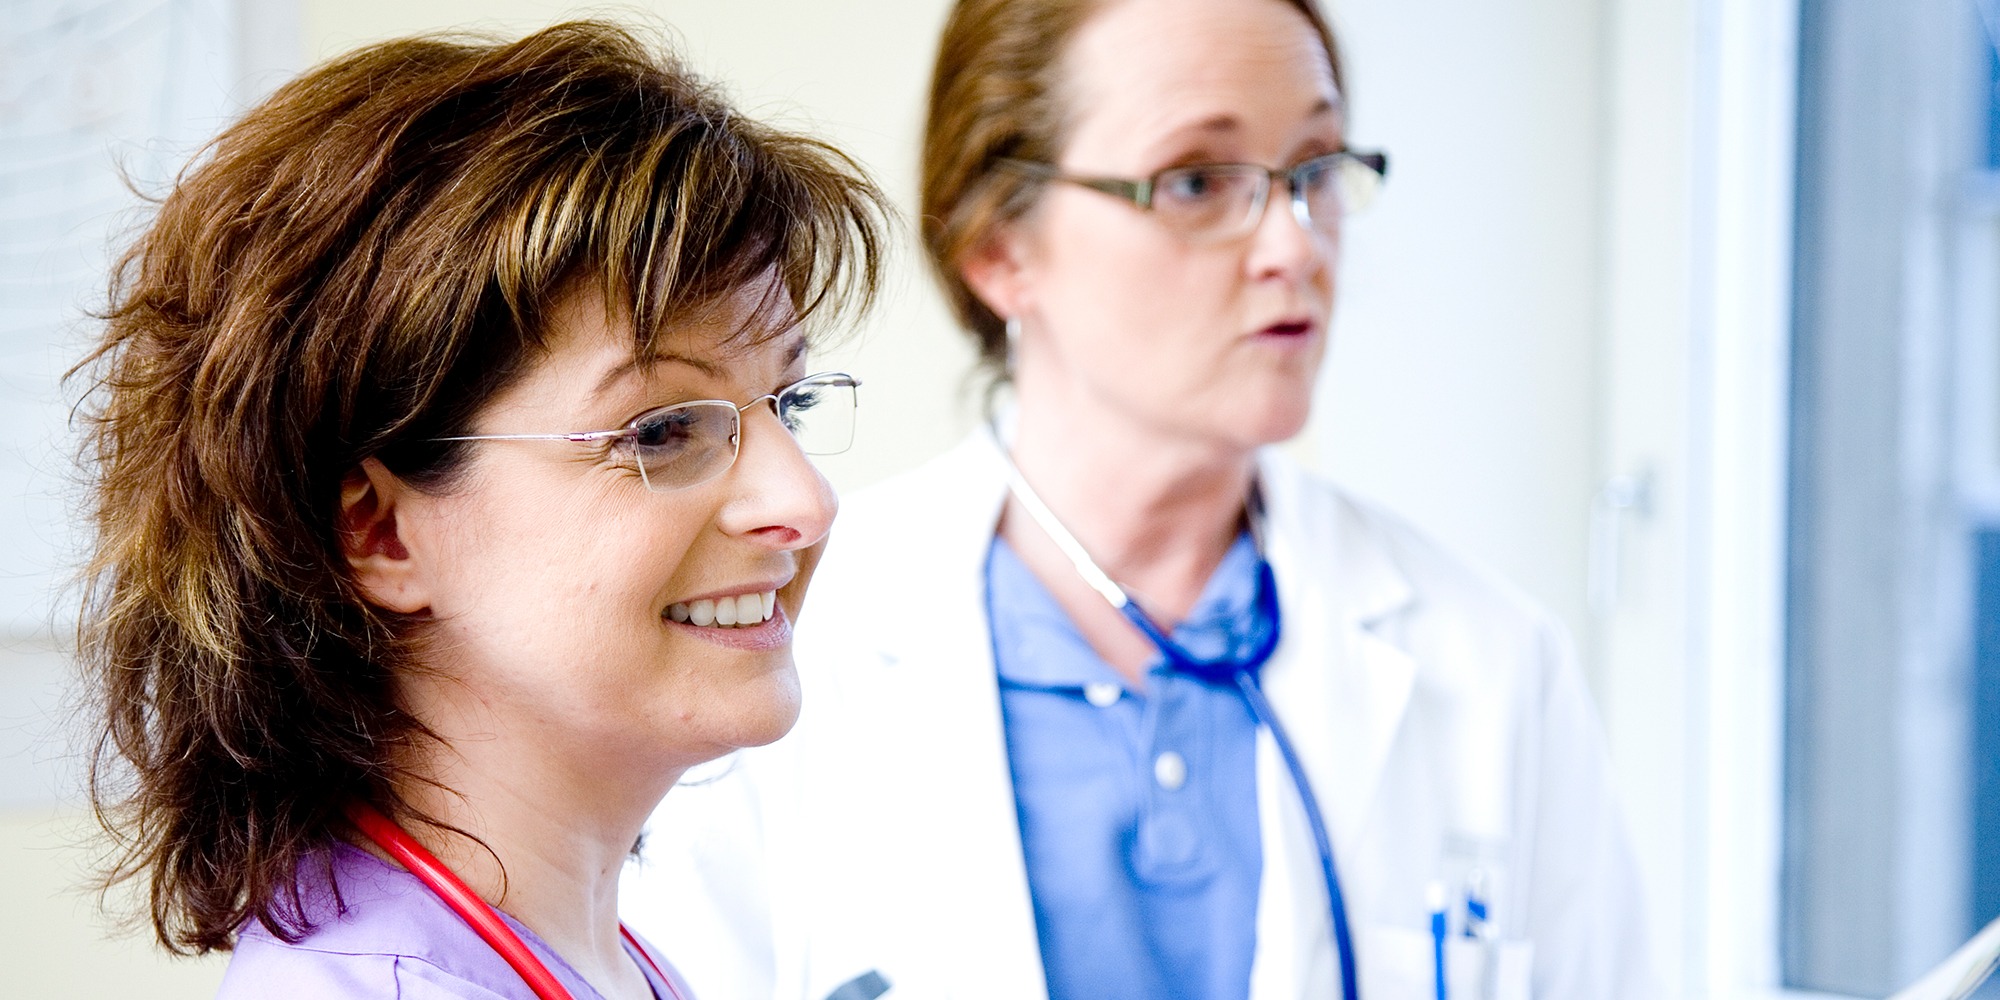 närbild på två kvinnliga läkare snett från sidan, i sjukhuskläder med stetoskop runt halsarna.